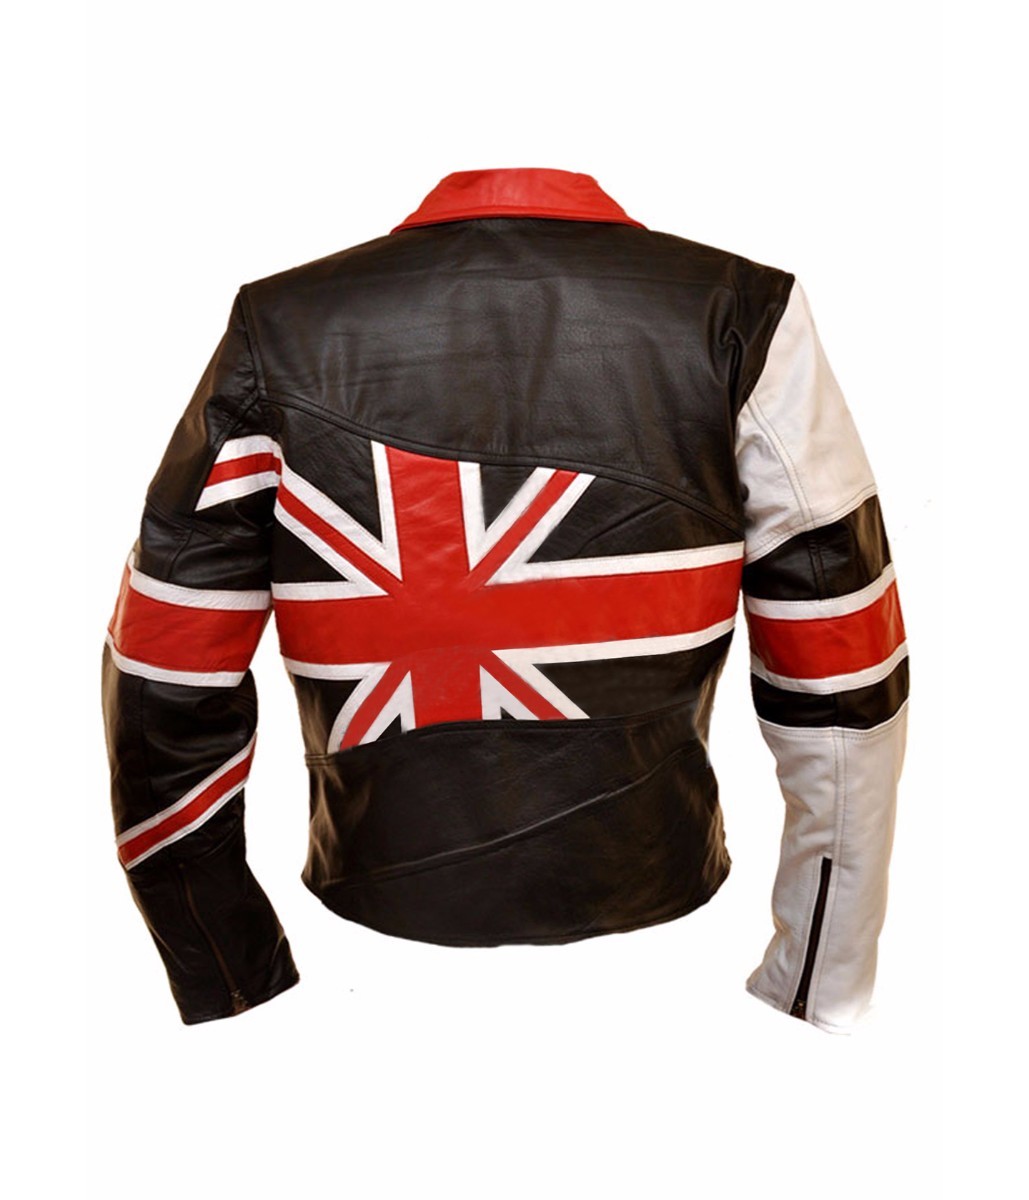 Union jack british flag faux leather jacket.